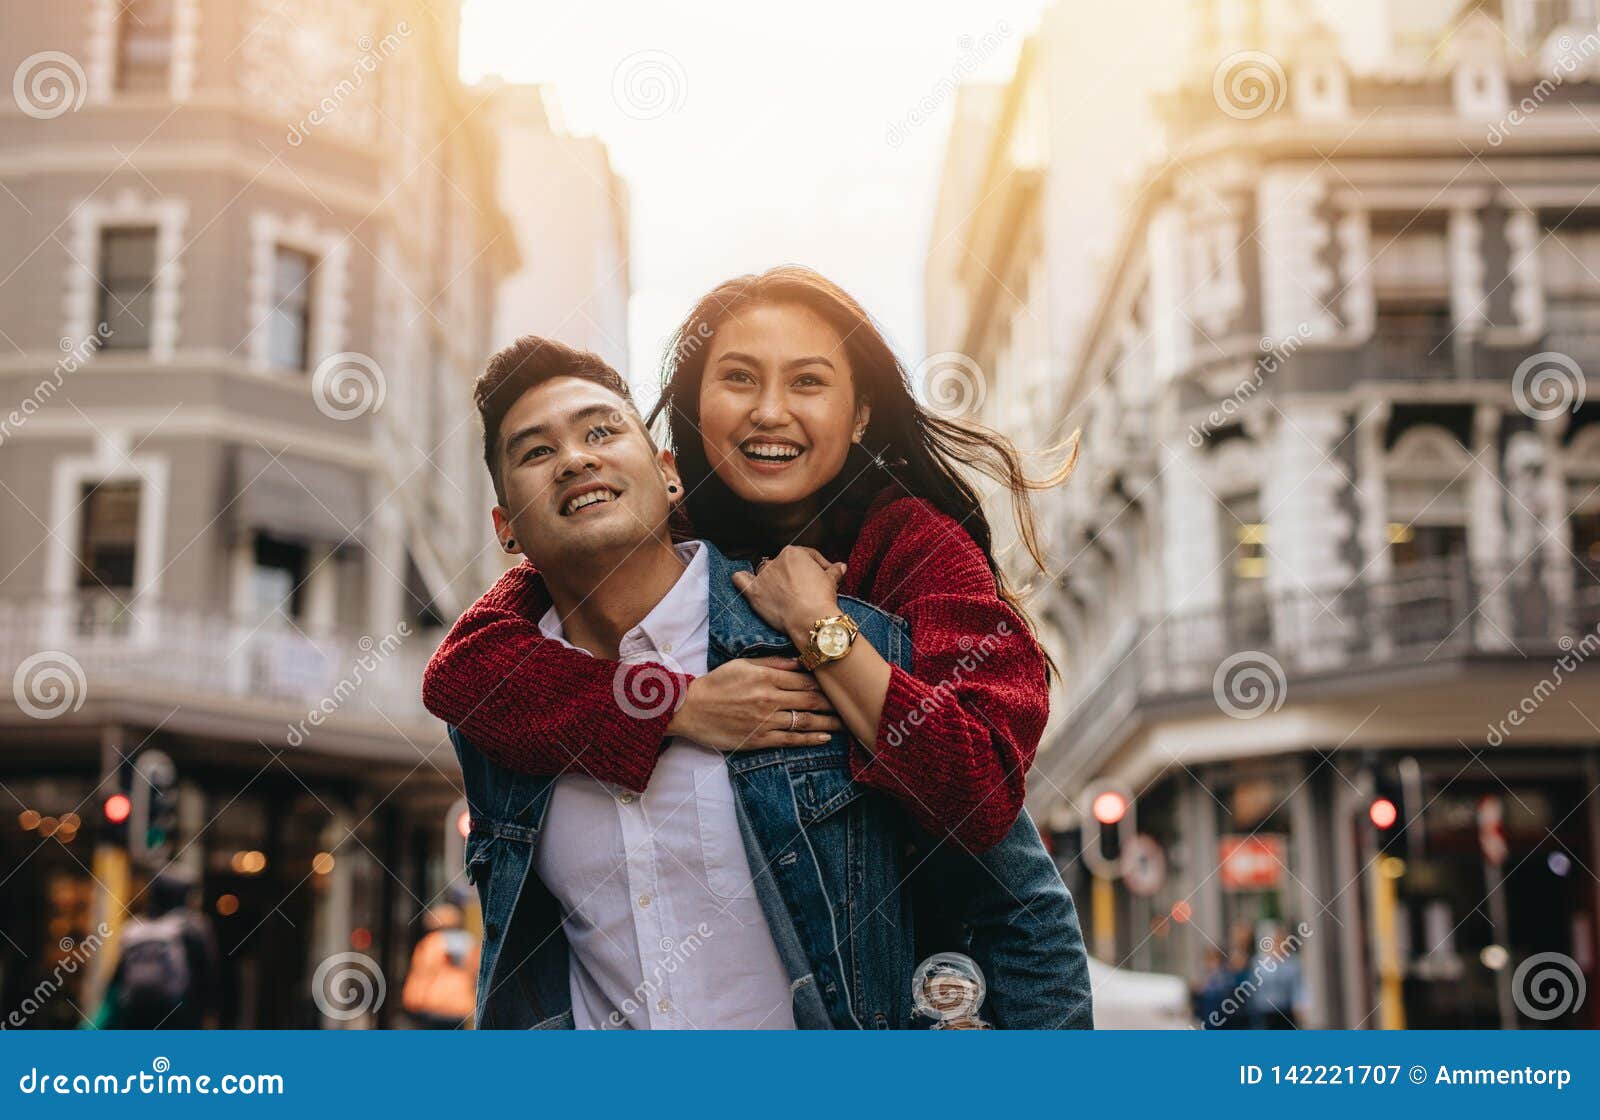 asiatische männer dating singlebörse für göttingen